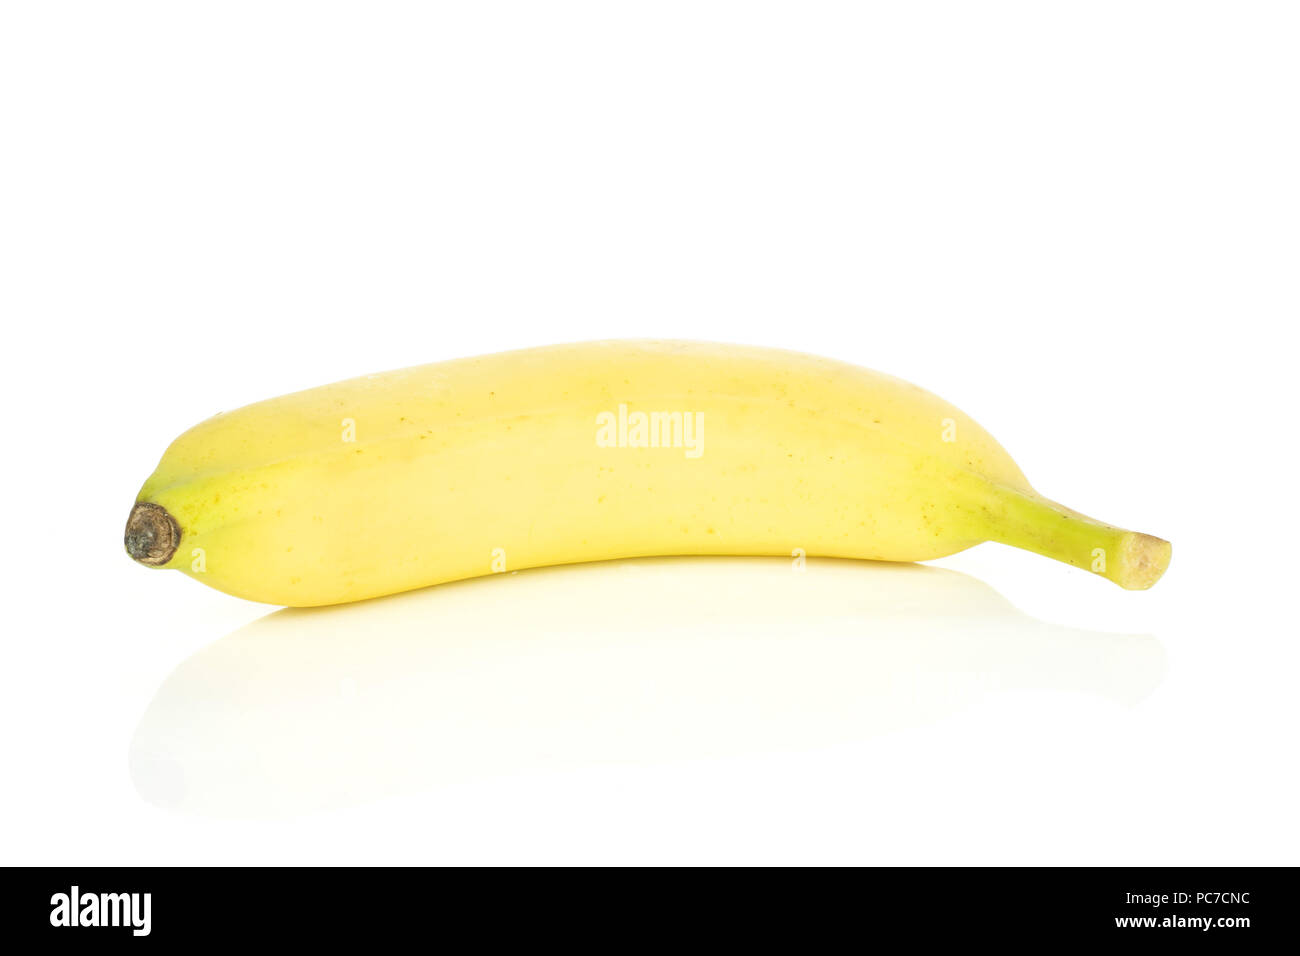 One whole fresh yellow banana isolated on white background Stock Photo